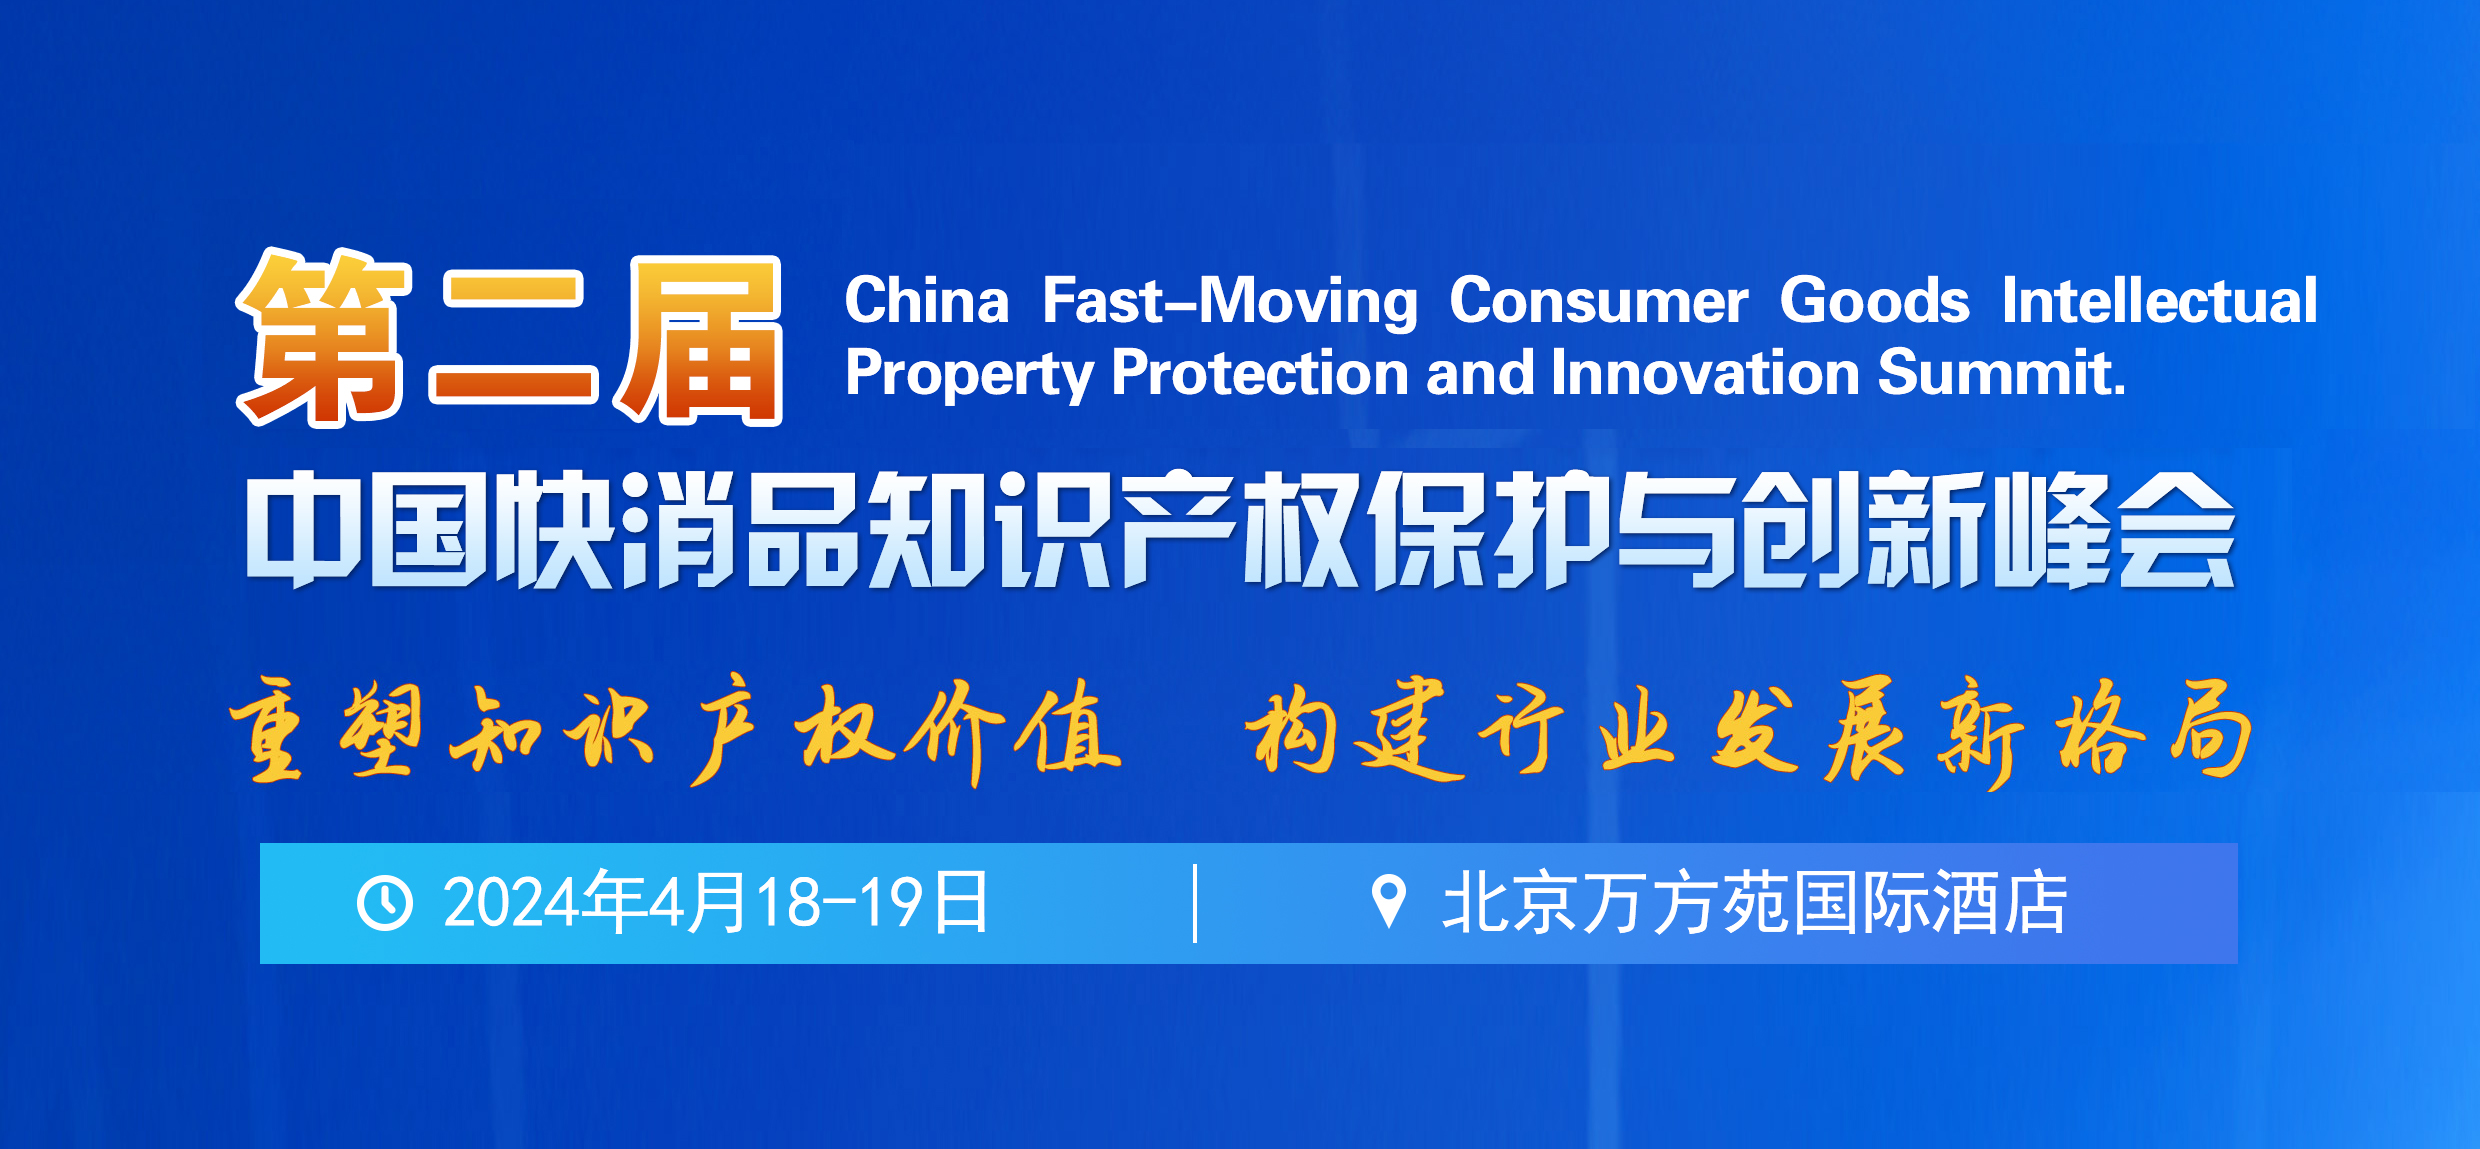 第二届中国快消品知识产权保护与创新峰会将于2024年4月18-19日在北京举办！